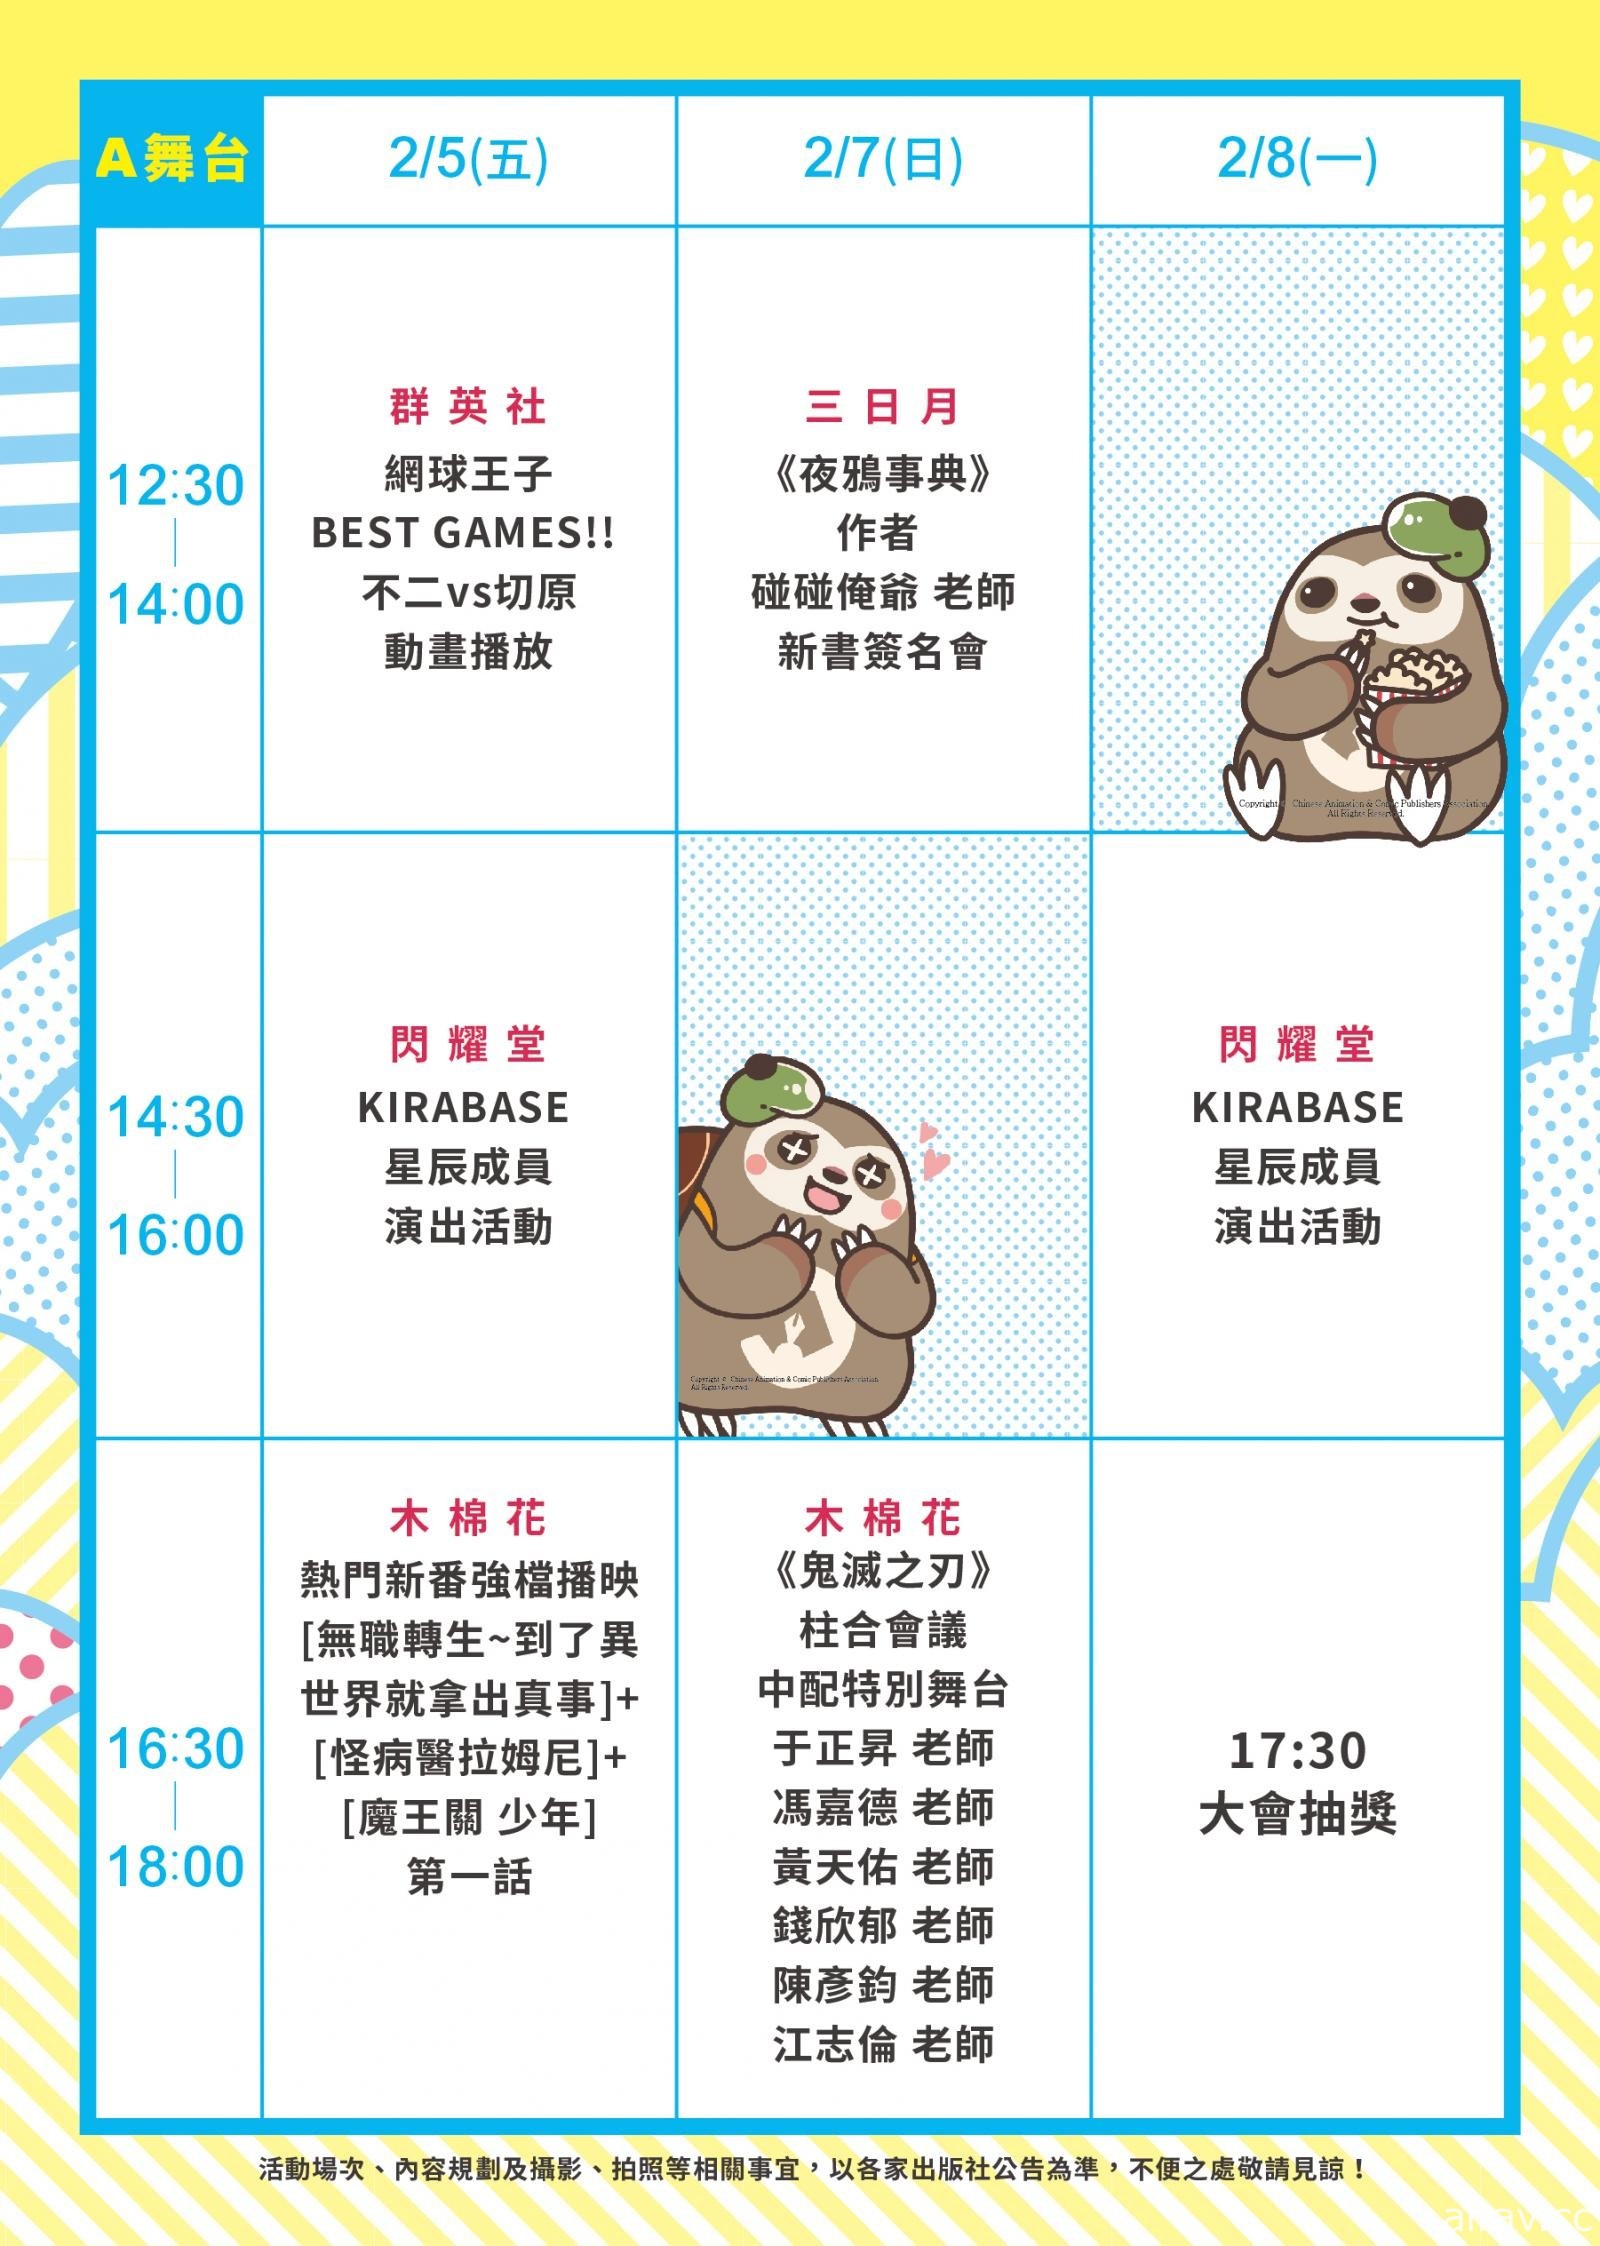 【TiCA21】東立、尖端、台灣角川宣布退出 第九屆台北國際動漫節仍如期舉辦